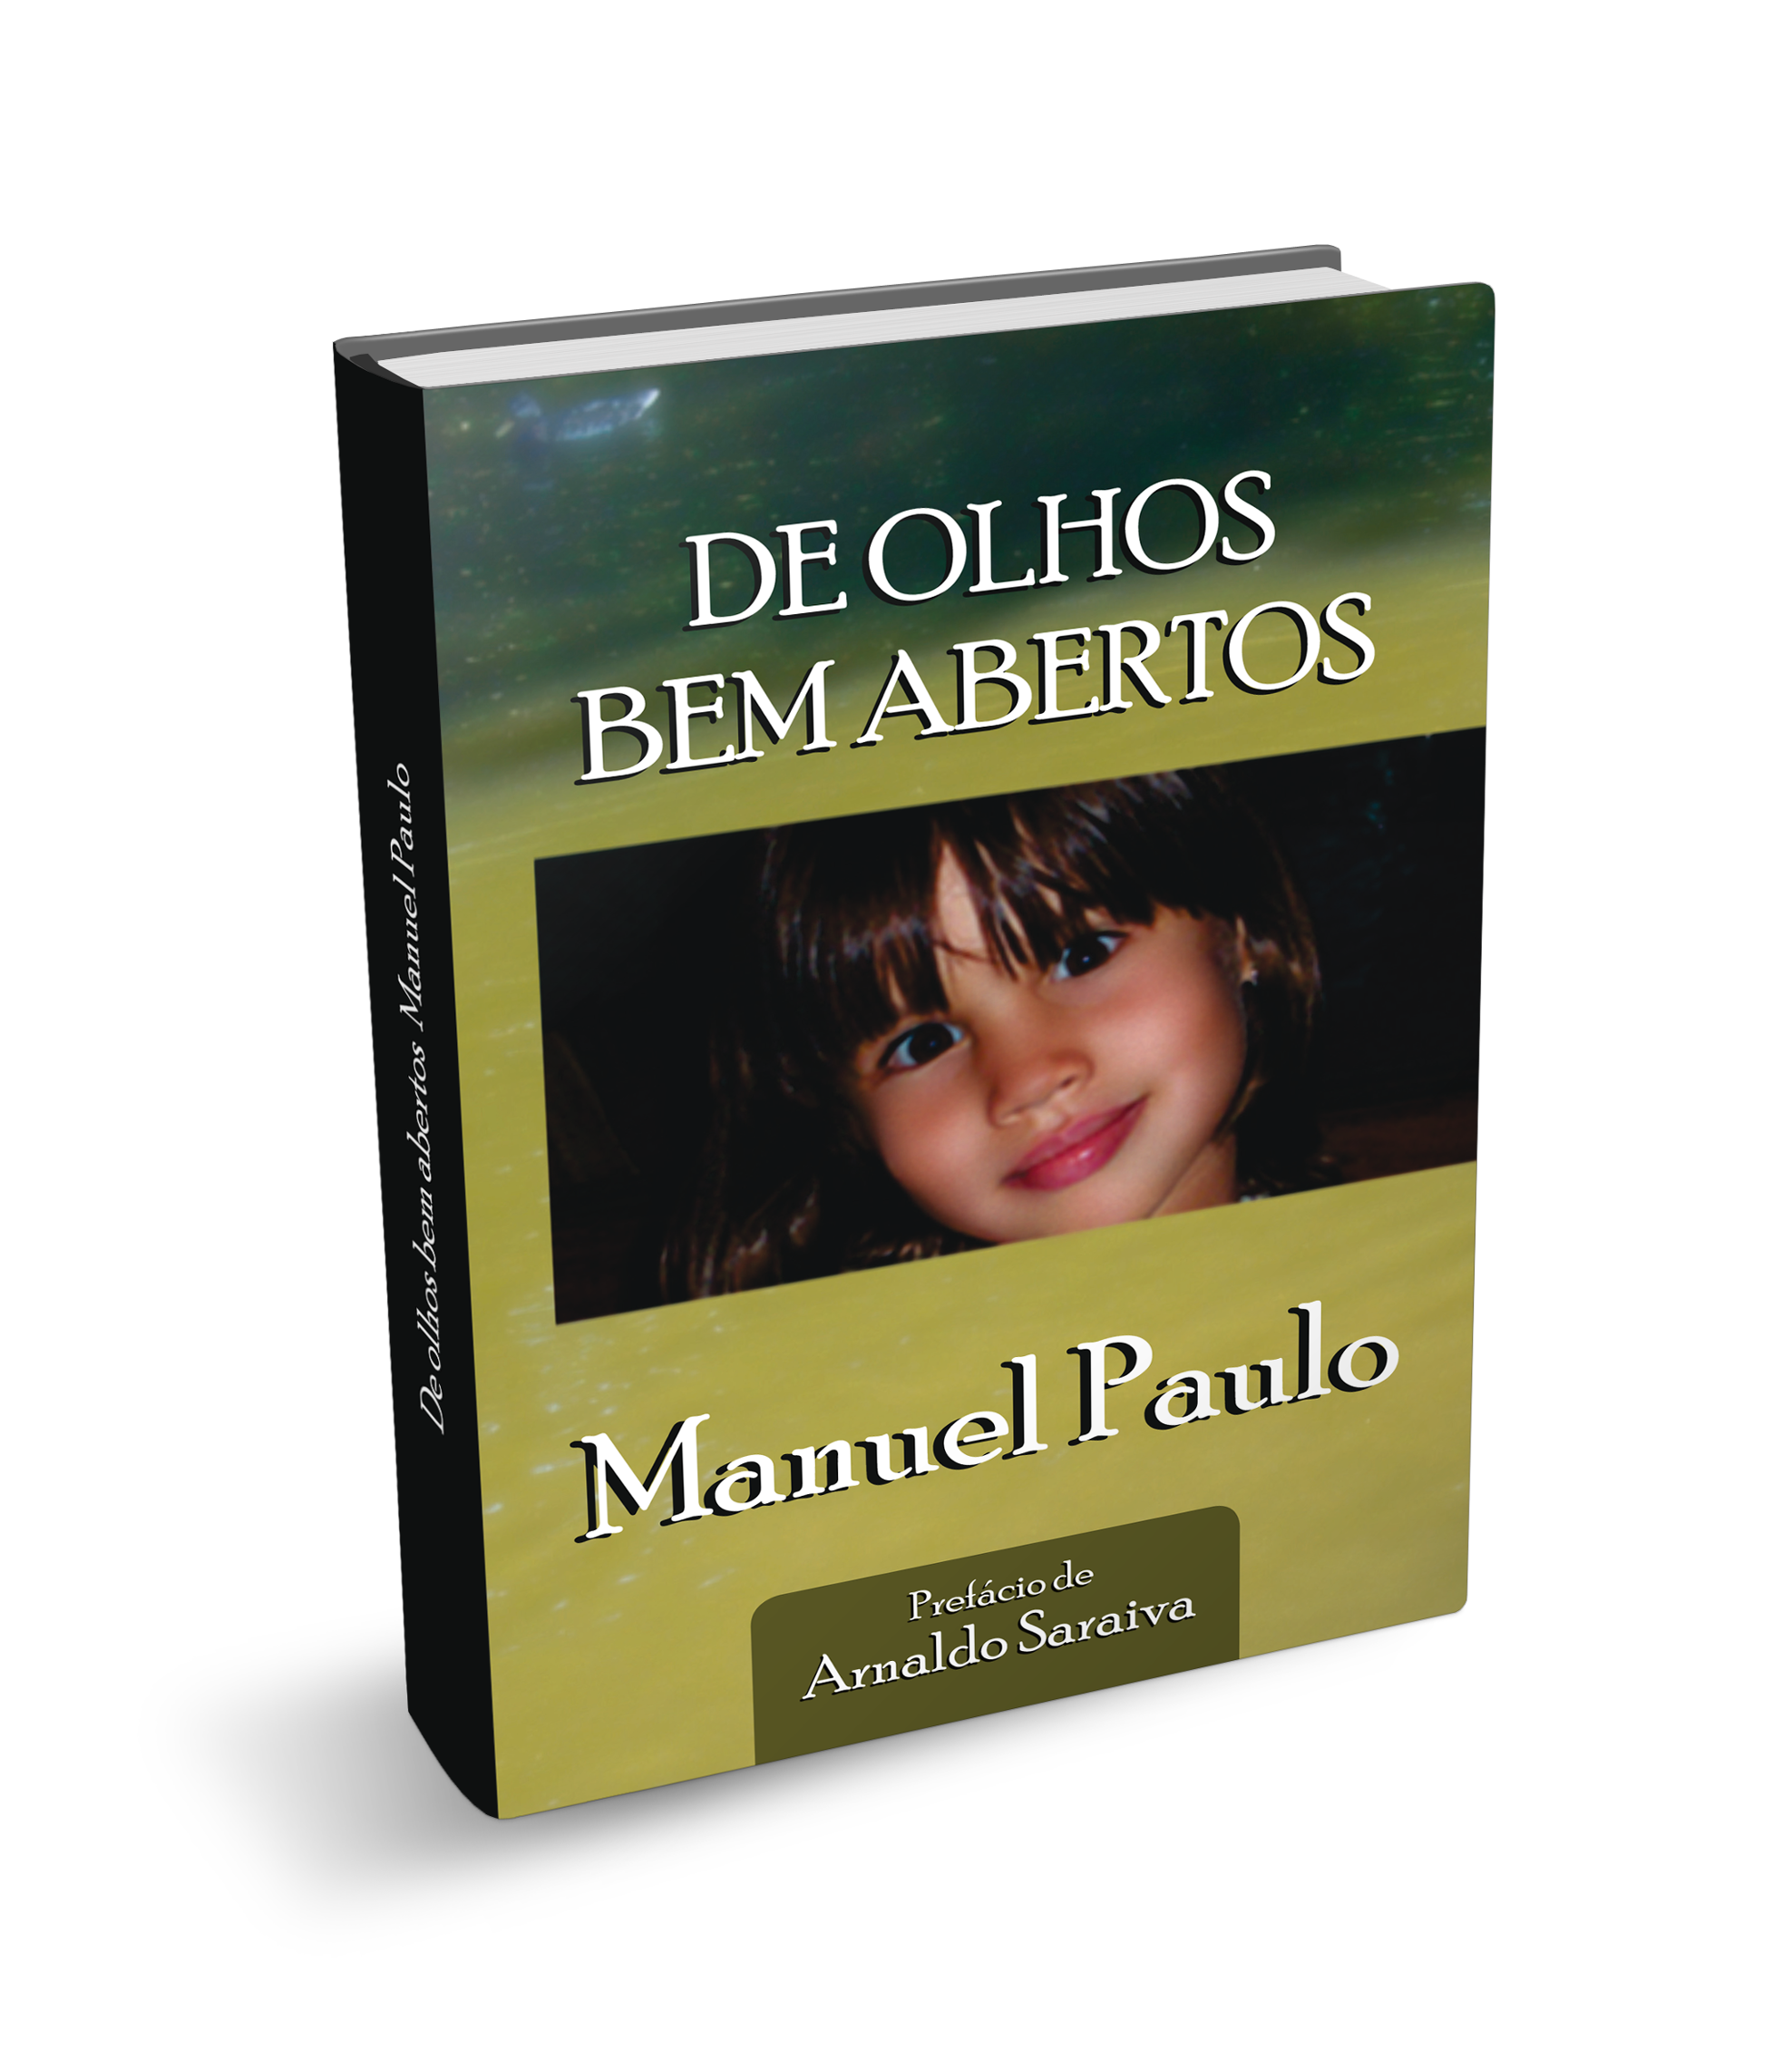 Livro "De Olhos Bem Abertos" do autor Manuel Paulo, com prefácio de Arnaldo Saraiva